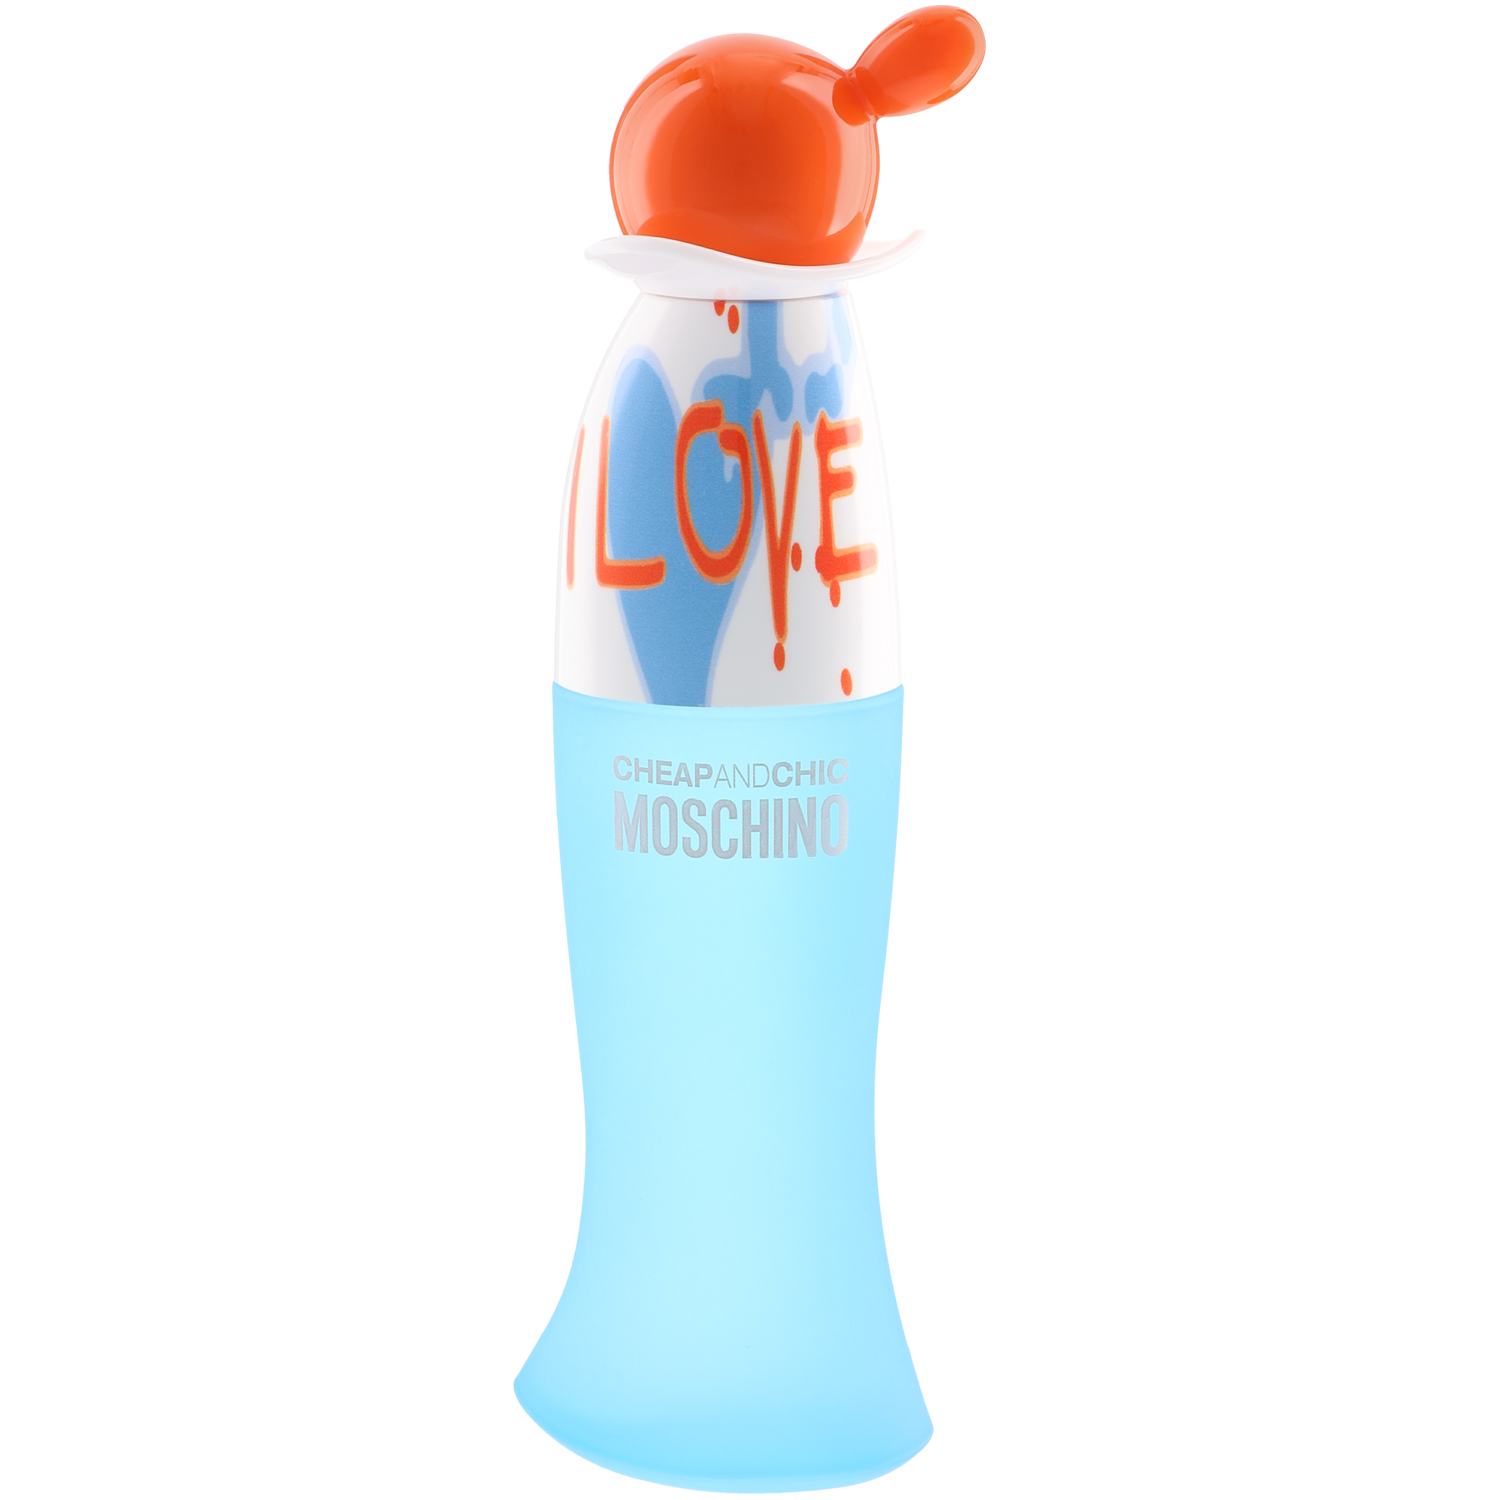 Духи Москино cheap and Chic. Cheap & Chic i Love Love Moschino. Москино чип энд Шик парфюмированная вода. Женская туалетная вода Moschino i Love Love 100 мл.